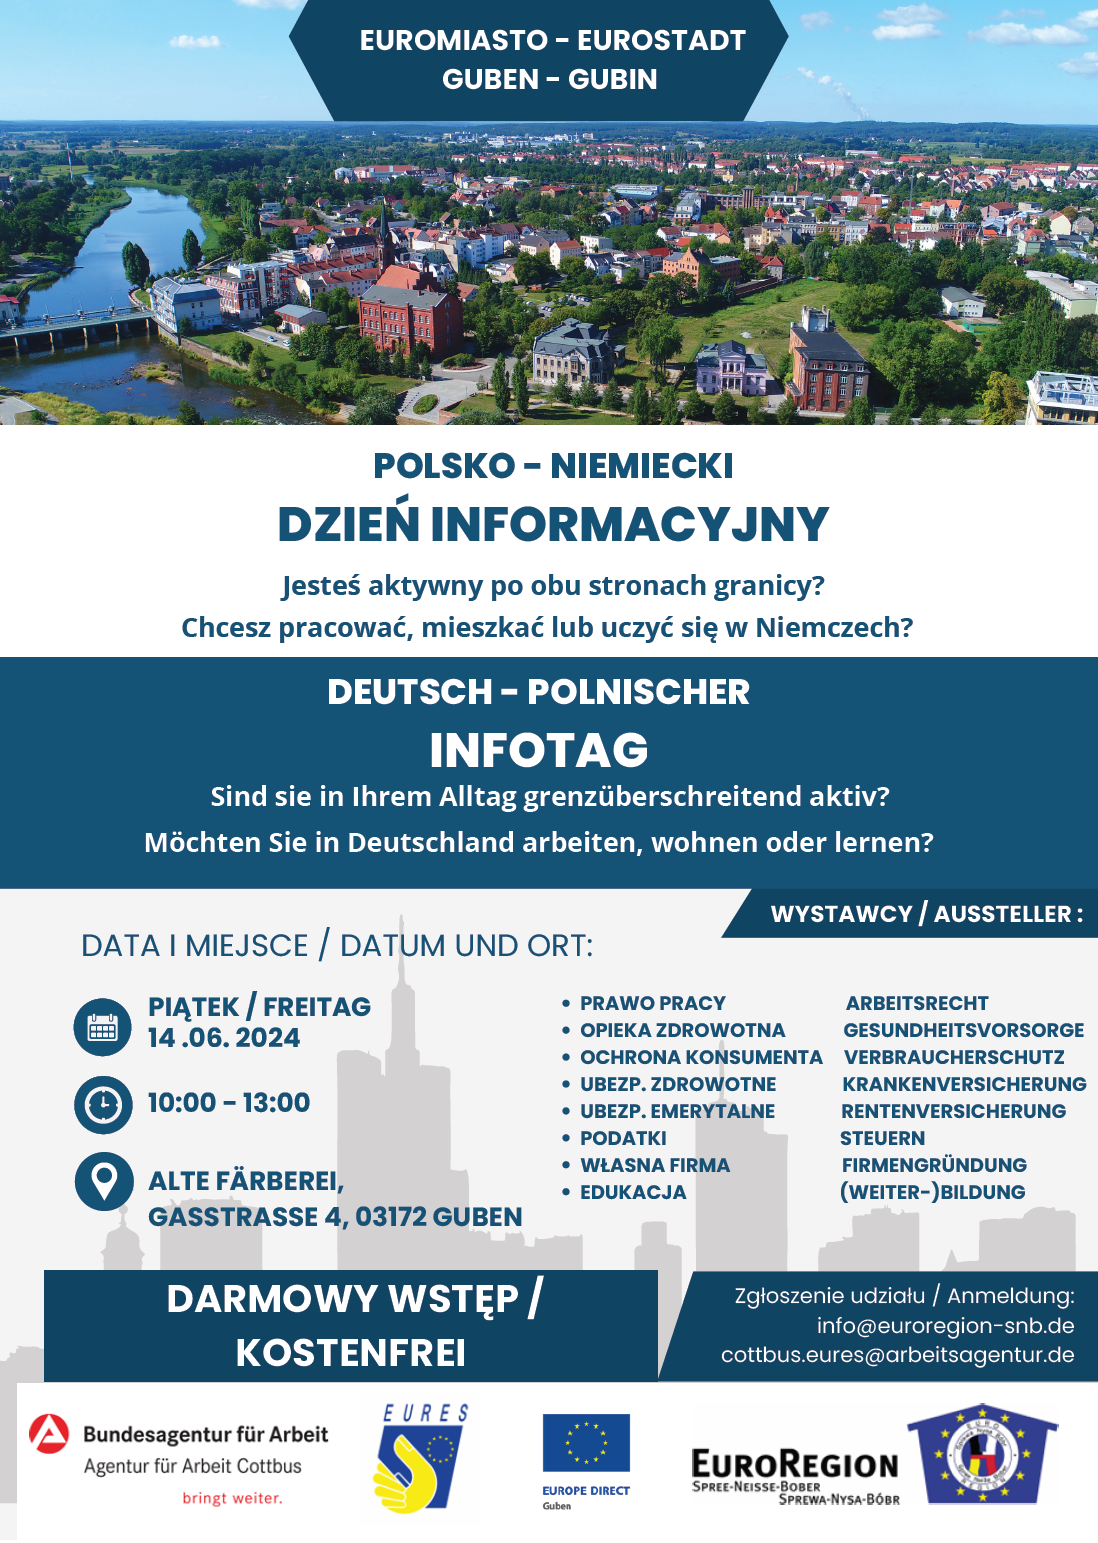 Obrazek dla: 14.06.2024 - zapraszamy na Polsko- Niemiecki Dzień Informacyjny w ramach EURES w Guben w Niemczech.